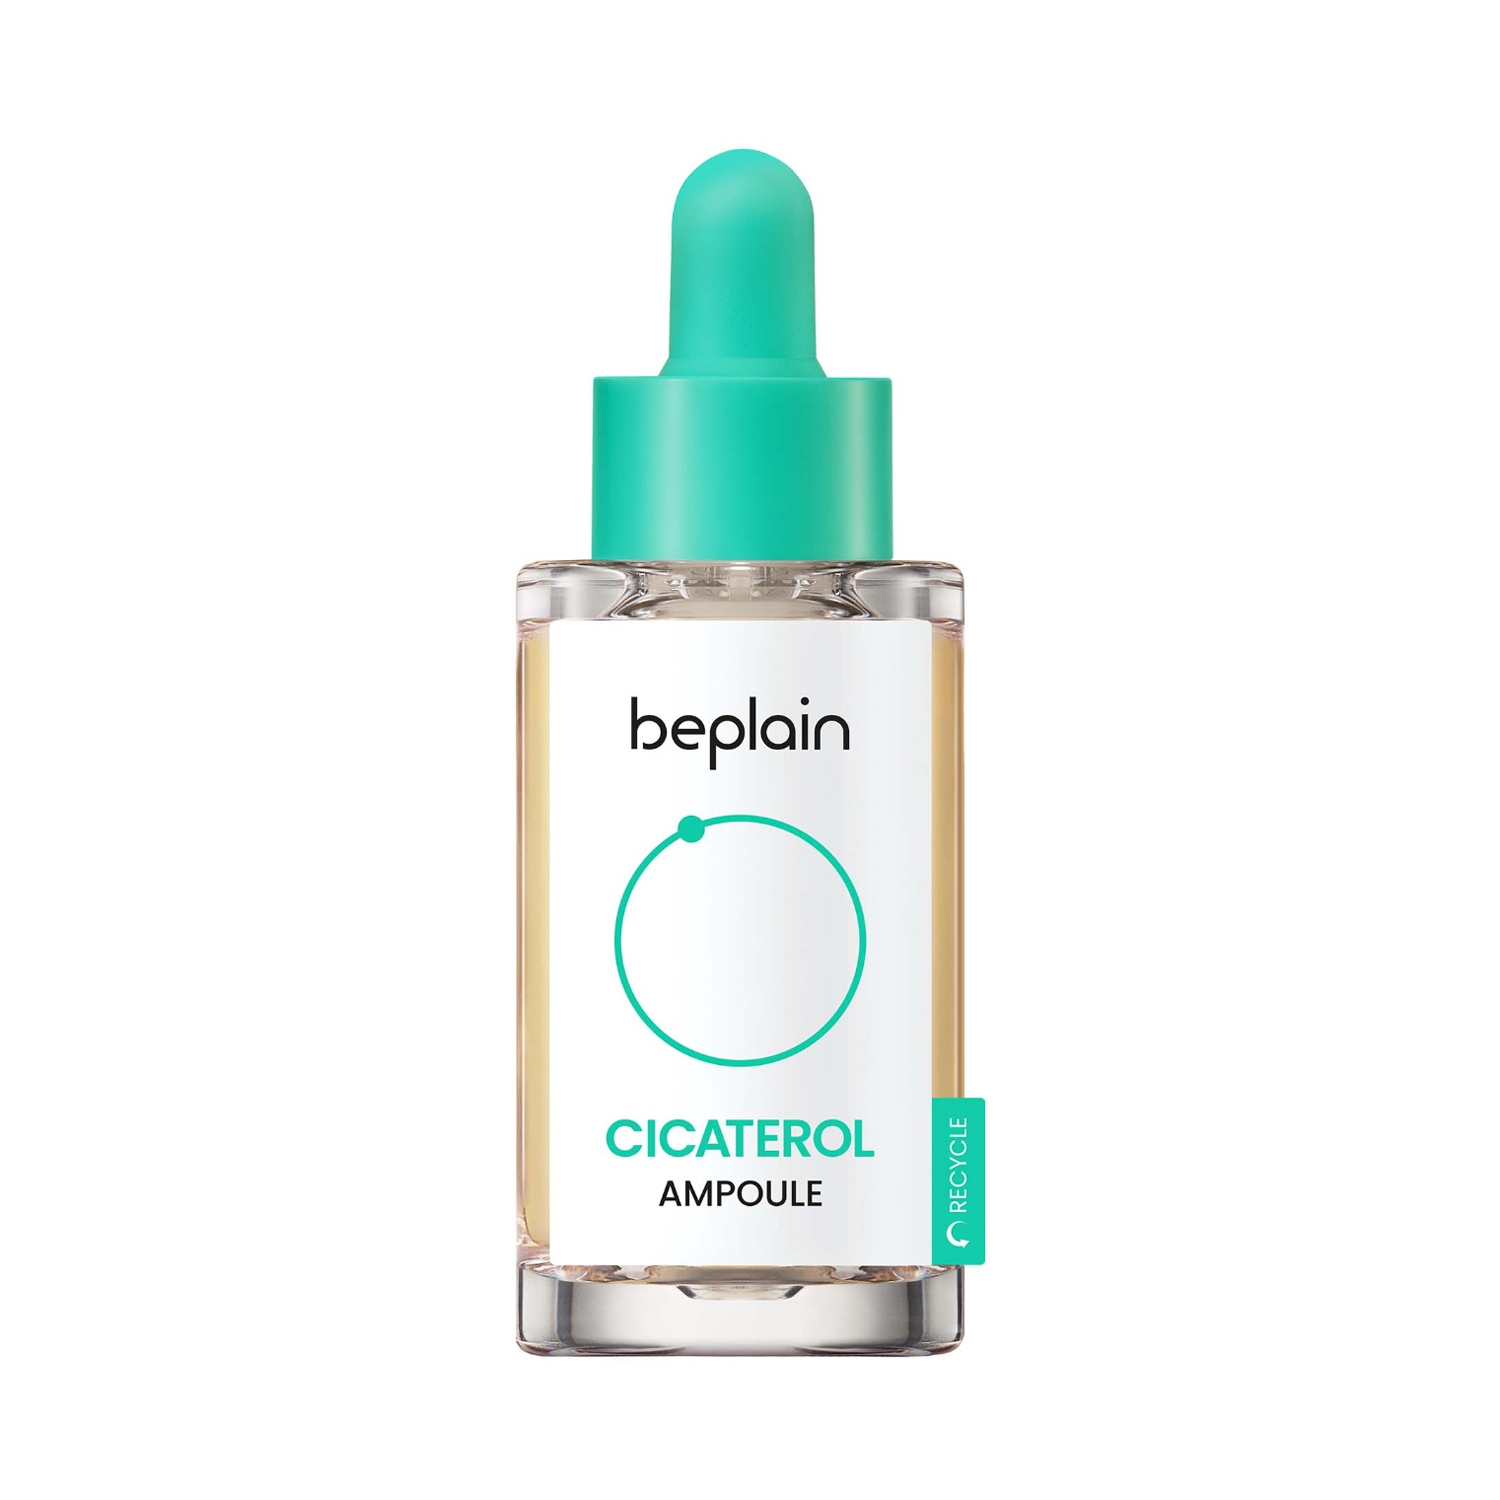 Beplain | Beplain Cicaterol Ampoule (30ml)